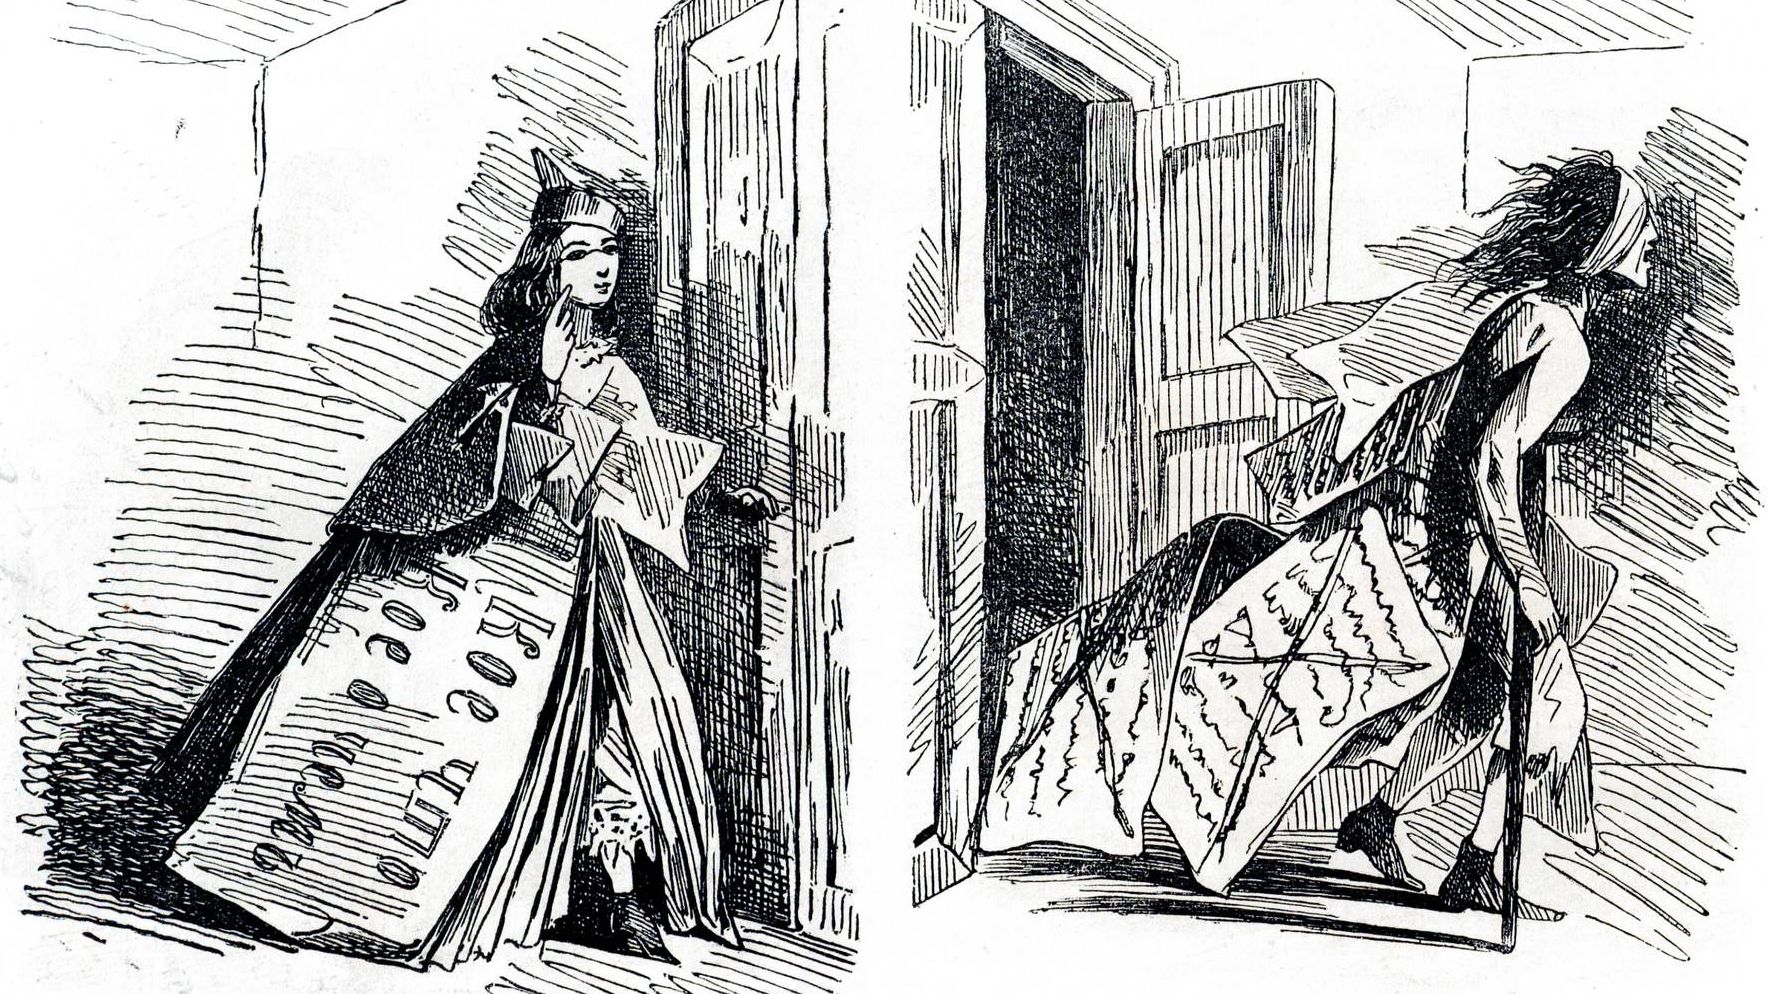 Карикатура Аполлона Б. Слева: Статья до просмотра цензурой; Справа: Статья процензурированная (фрагмент). 1863